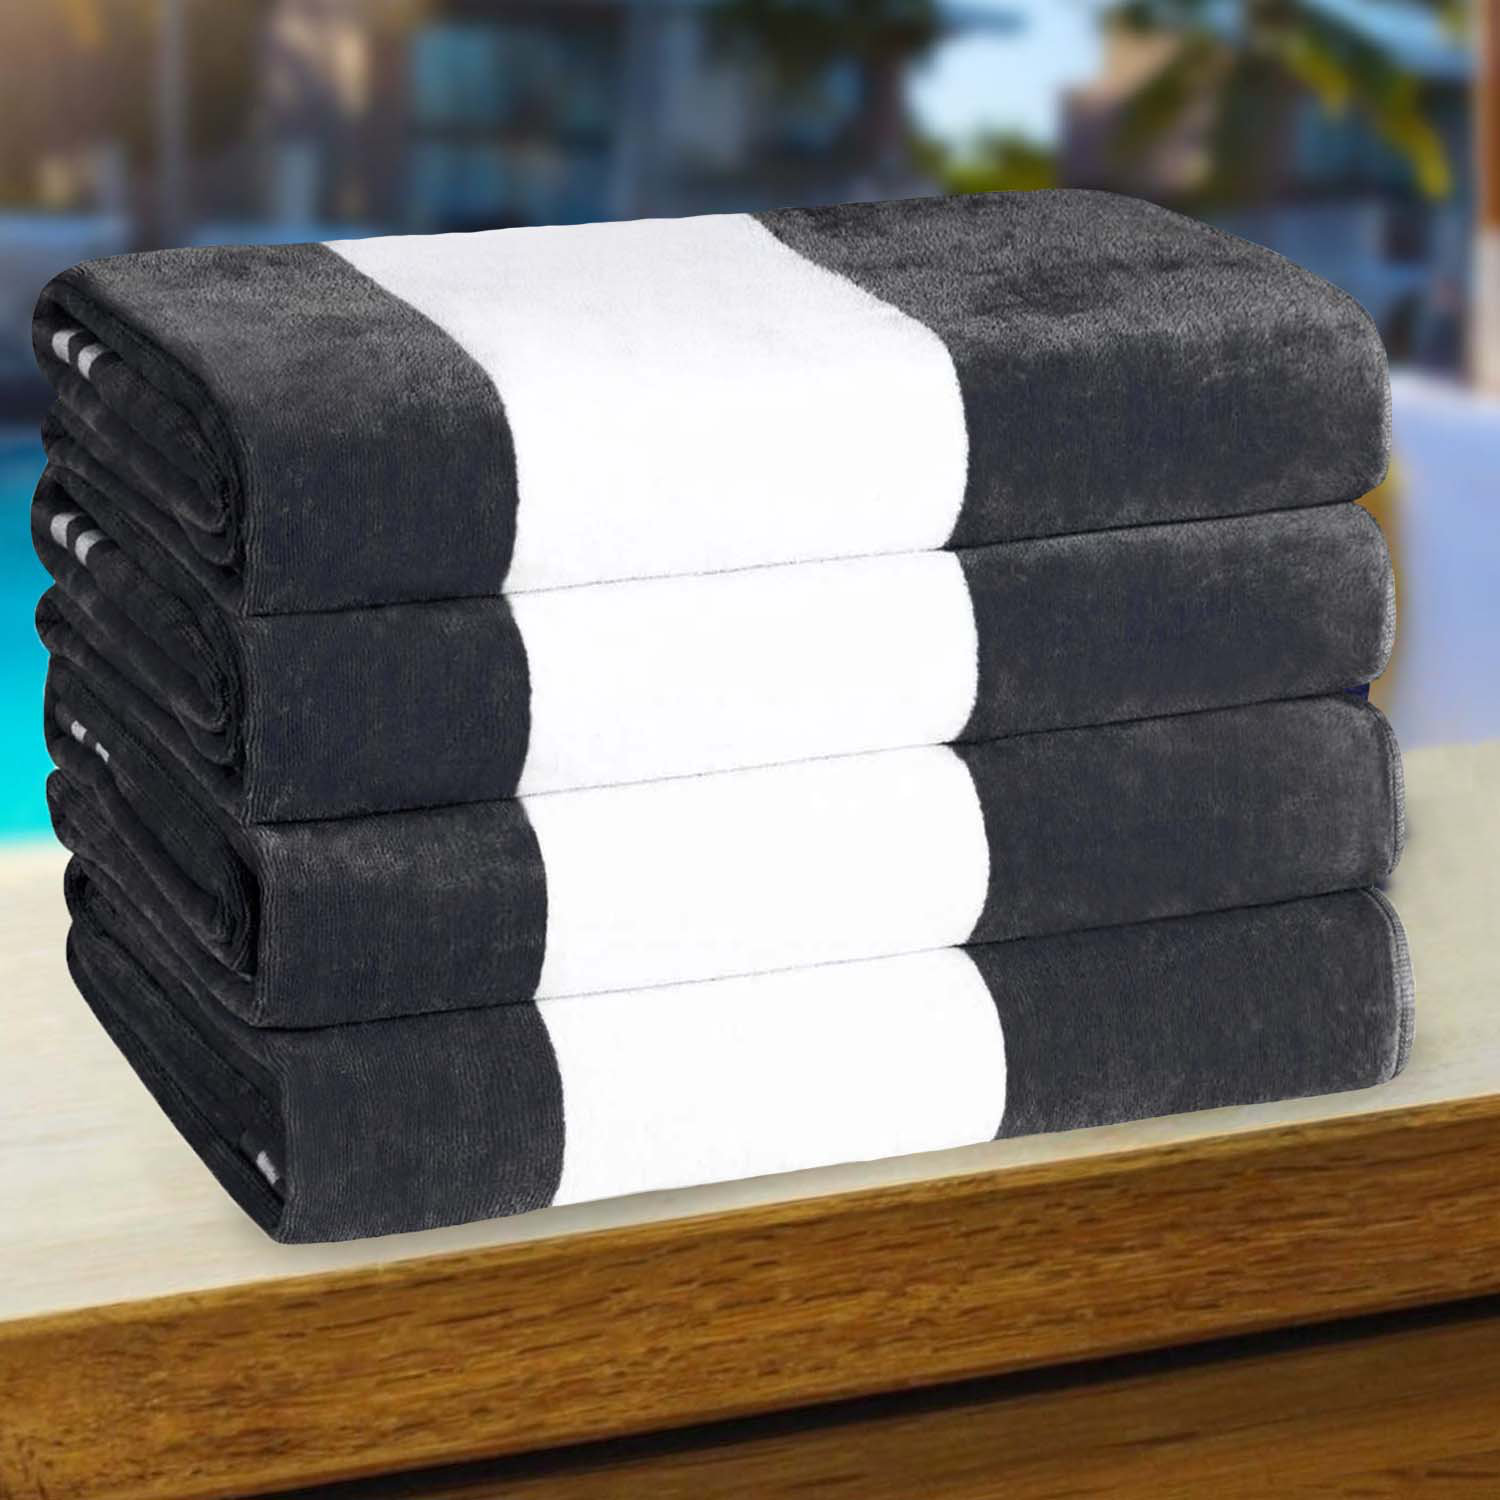 https://assets.wfcdn.com/im/47804299/compr-r85/2471/247148423/wayfair-basics-buckman-100-cotton-beach-towel-set.jpg